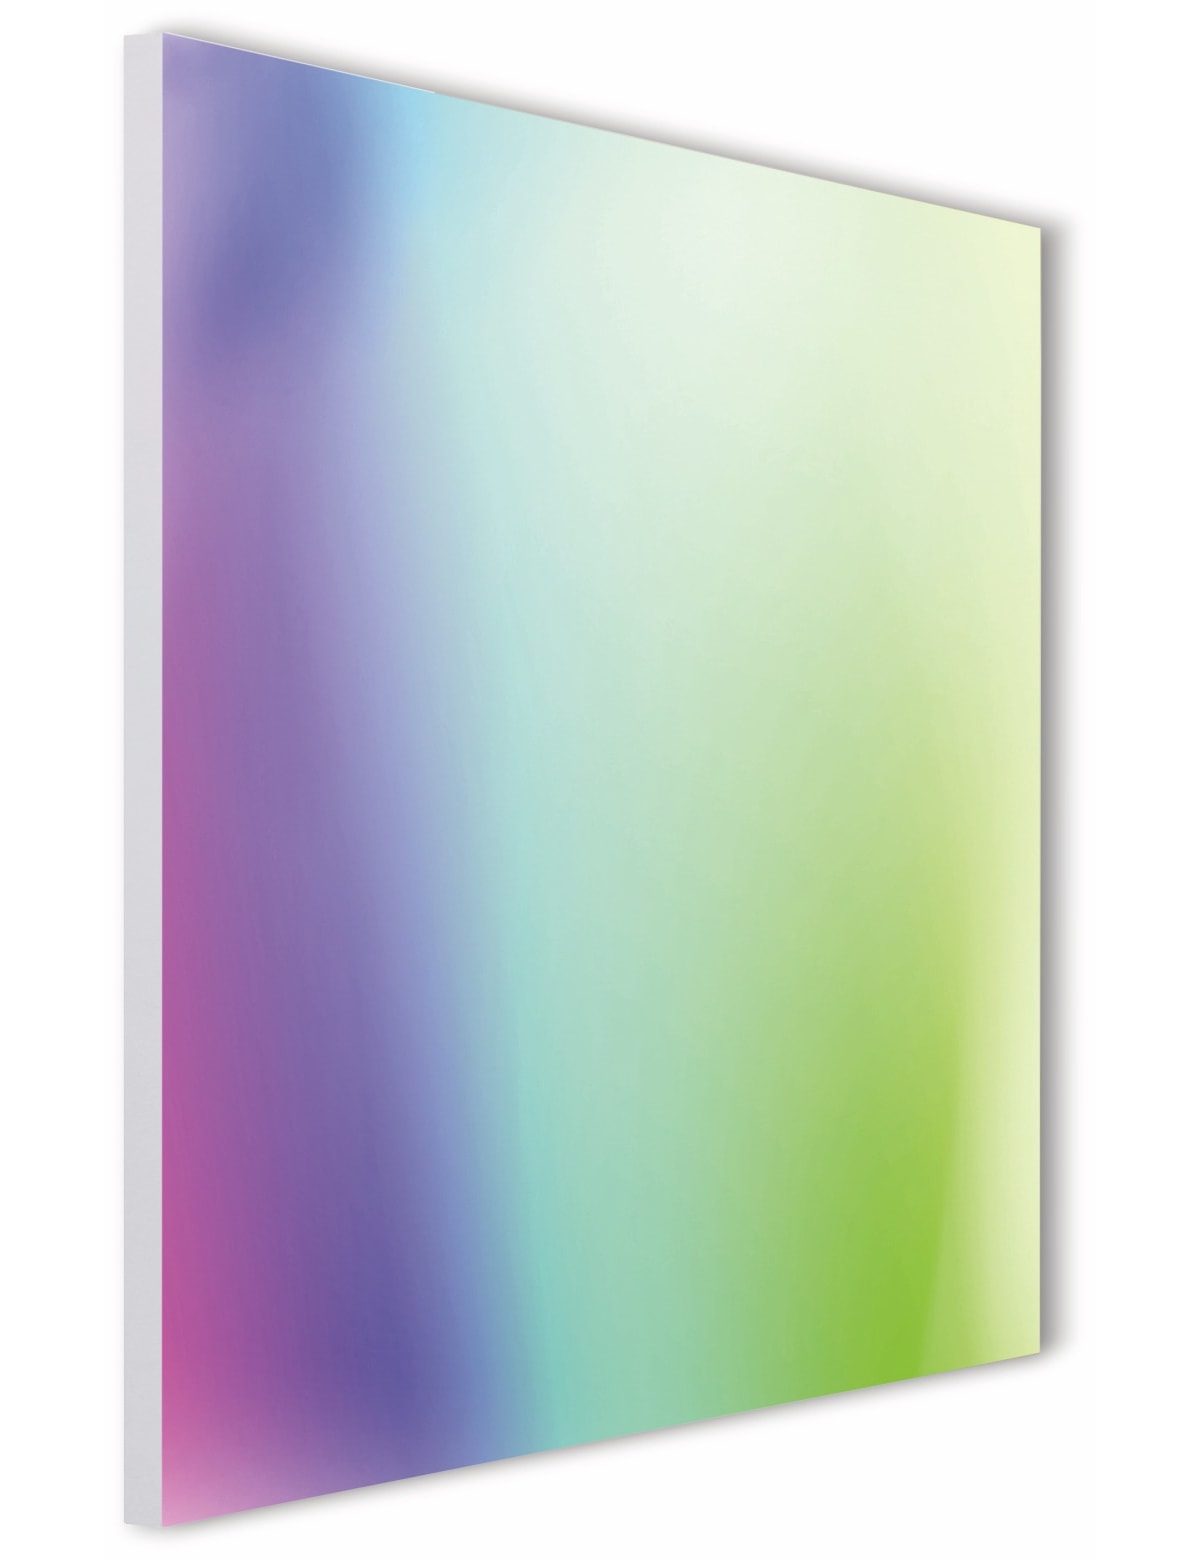 TINT LED-Panel Aris, 30x30 cm, 1400 lm, Rahmenlos, 18 W, RGB